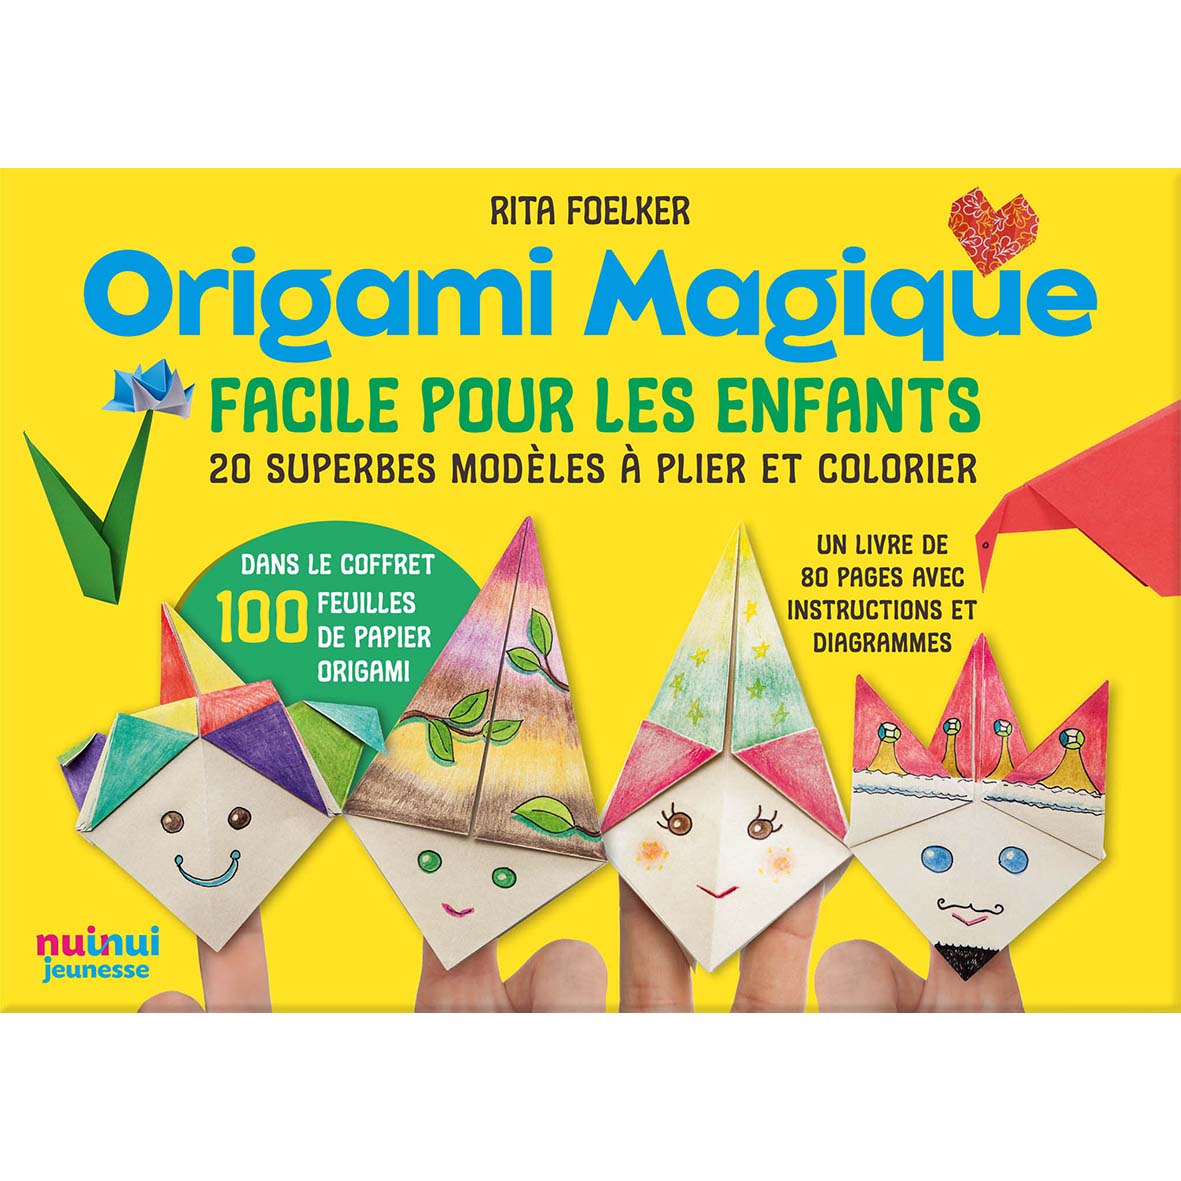 Origami Magique facile pour les enfants